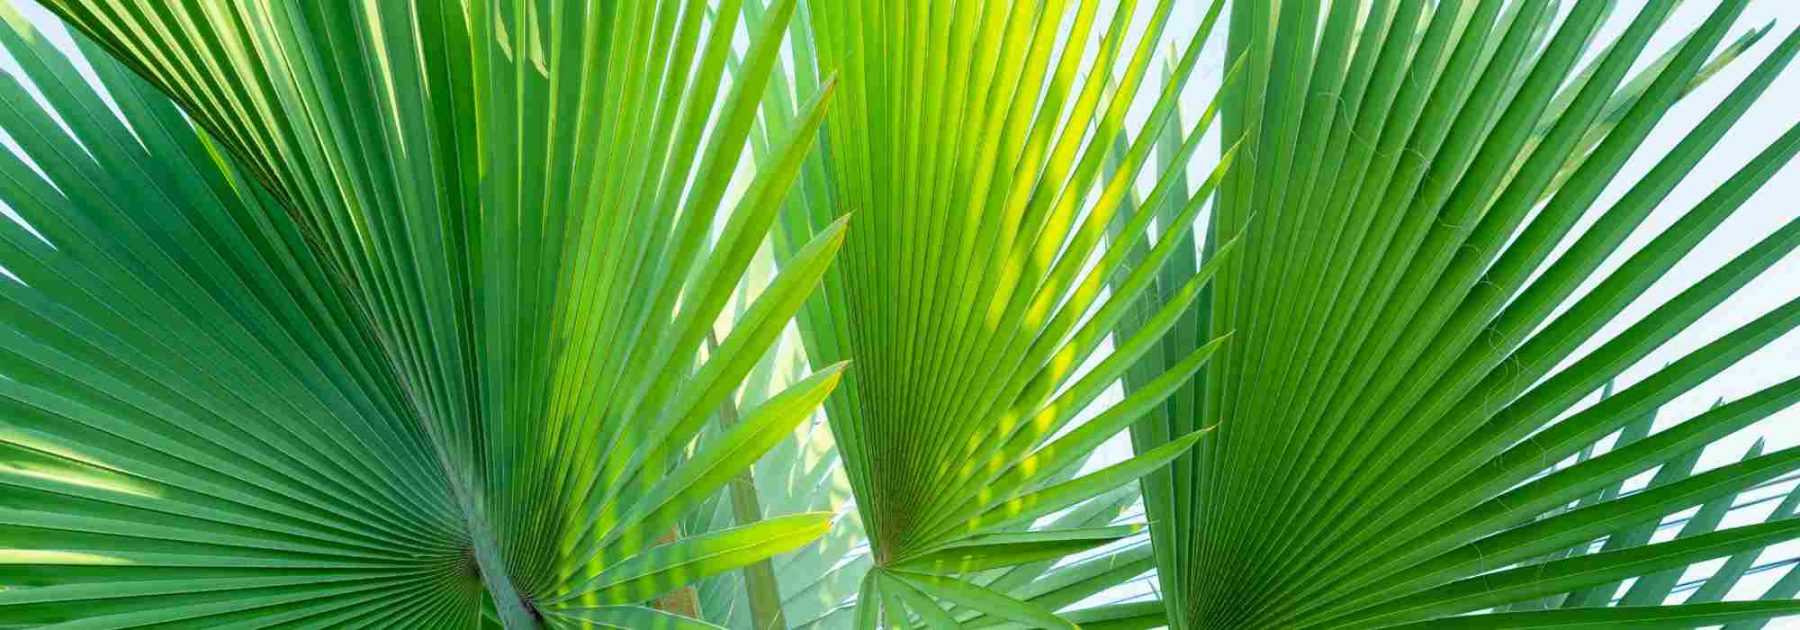 Pour profiter d'un palmier à l'intérieur, ce sont ces variétés faciles  qu'il faut